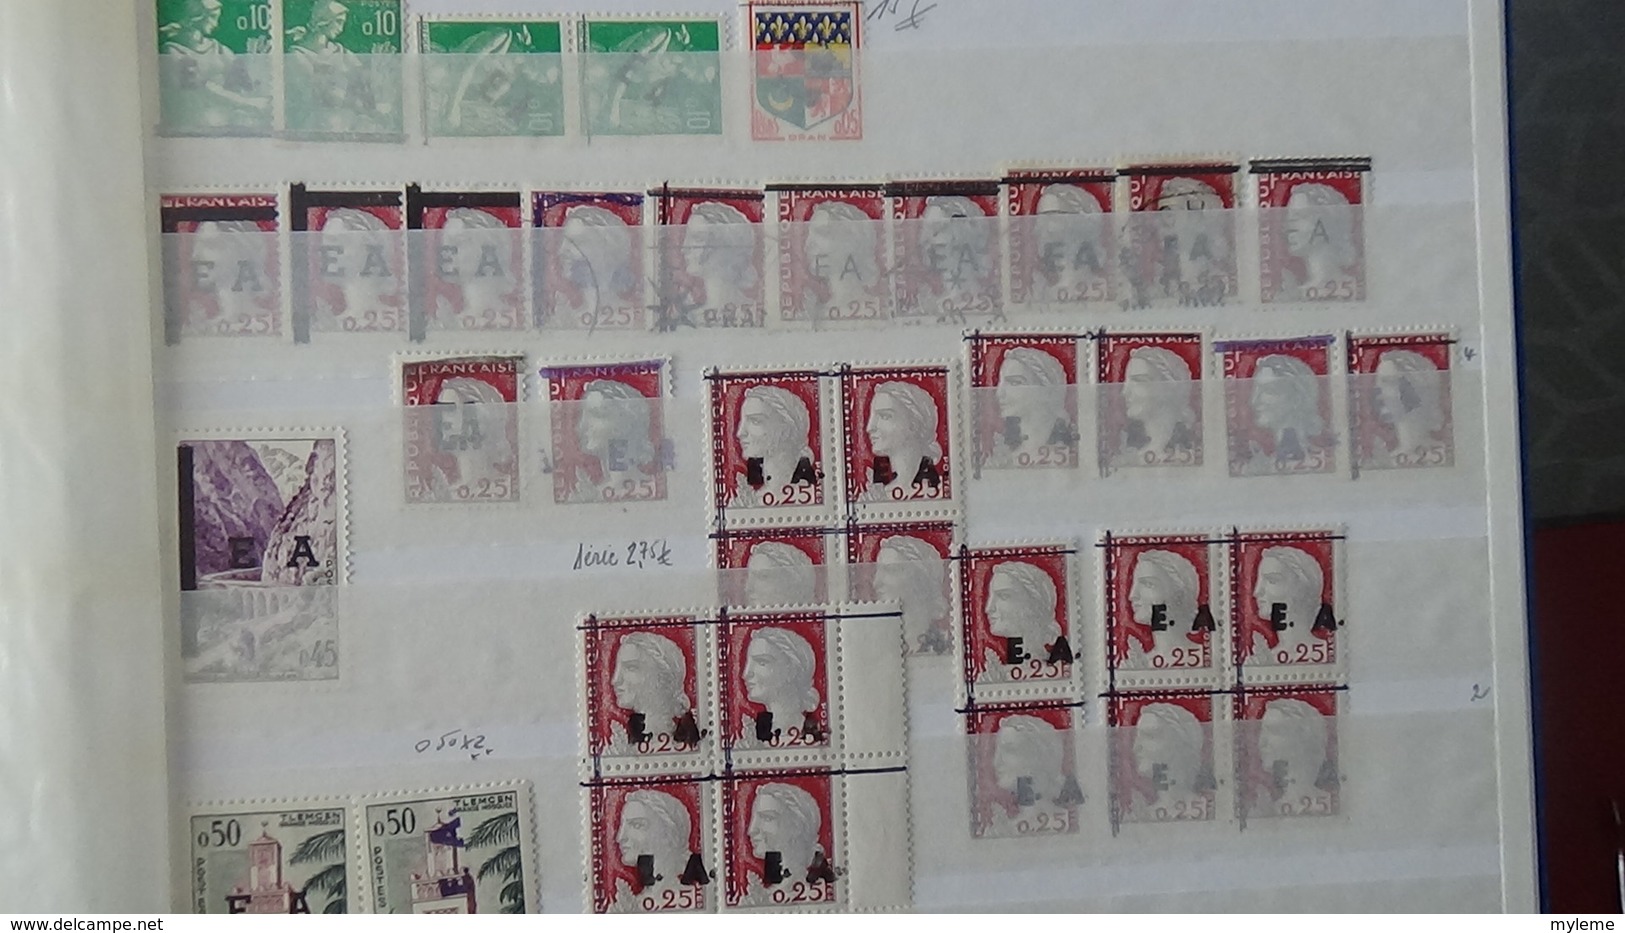 Belle collection de timbres surchargés EA tous états dont un bon pourcentage signés. Pas commun. A saisir !!!